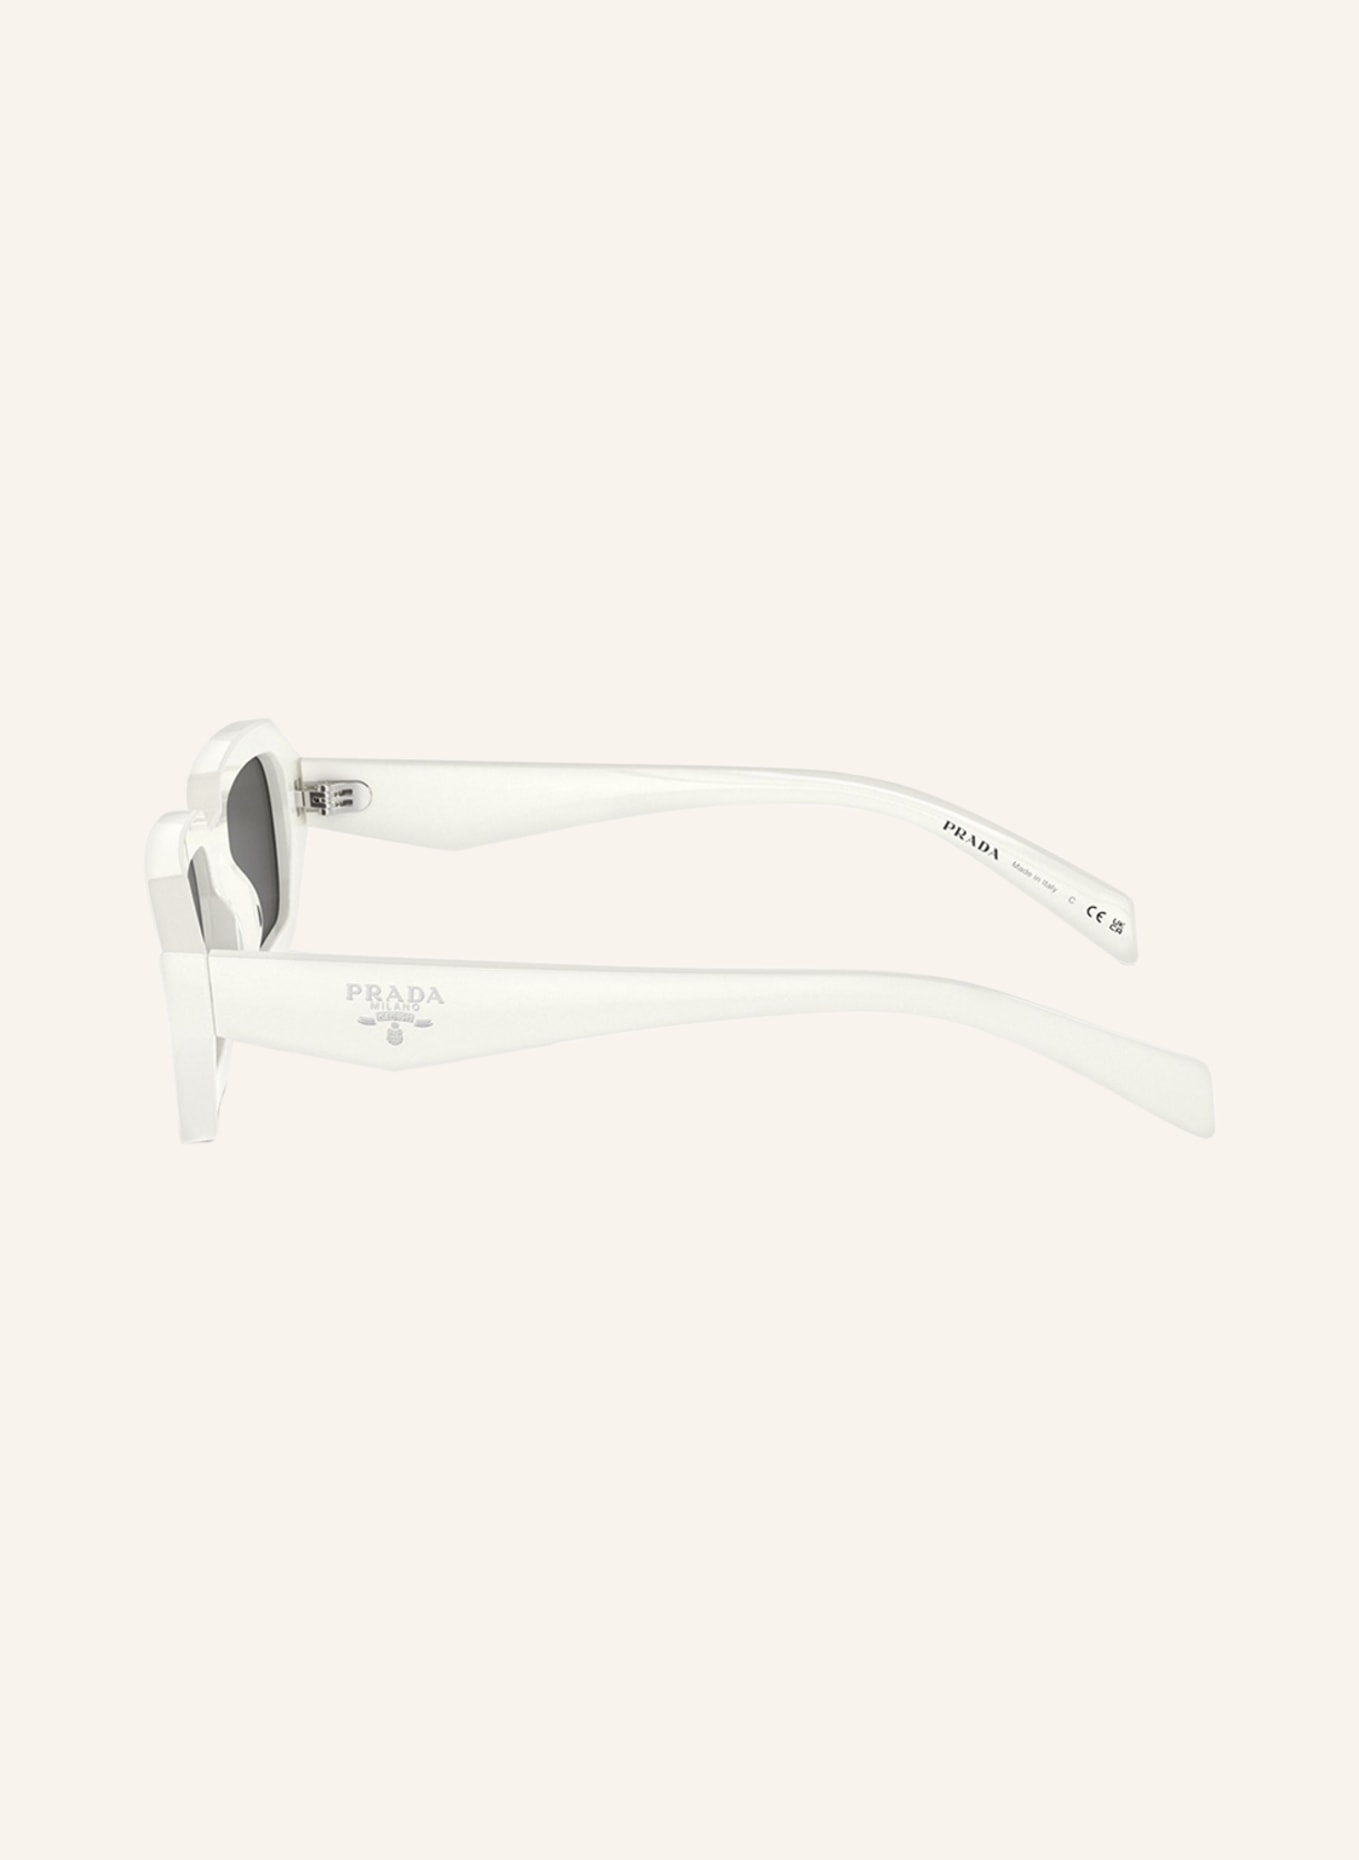 PRADA Sunglasses PR A12S, Color: 17K08Z - WHITE/ DARK GRAY (Image 4)